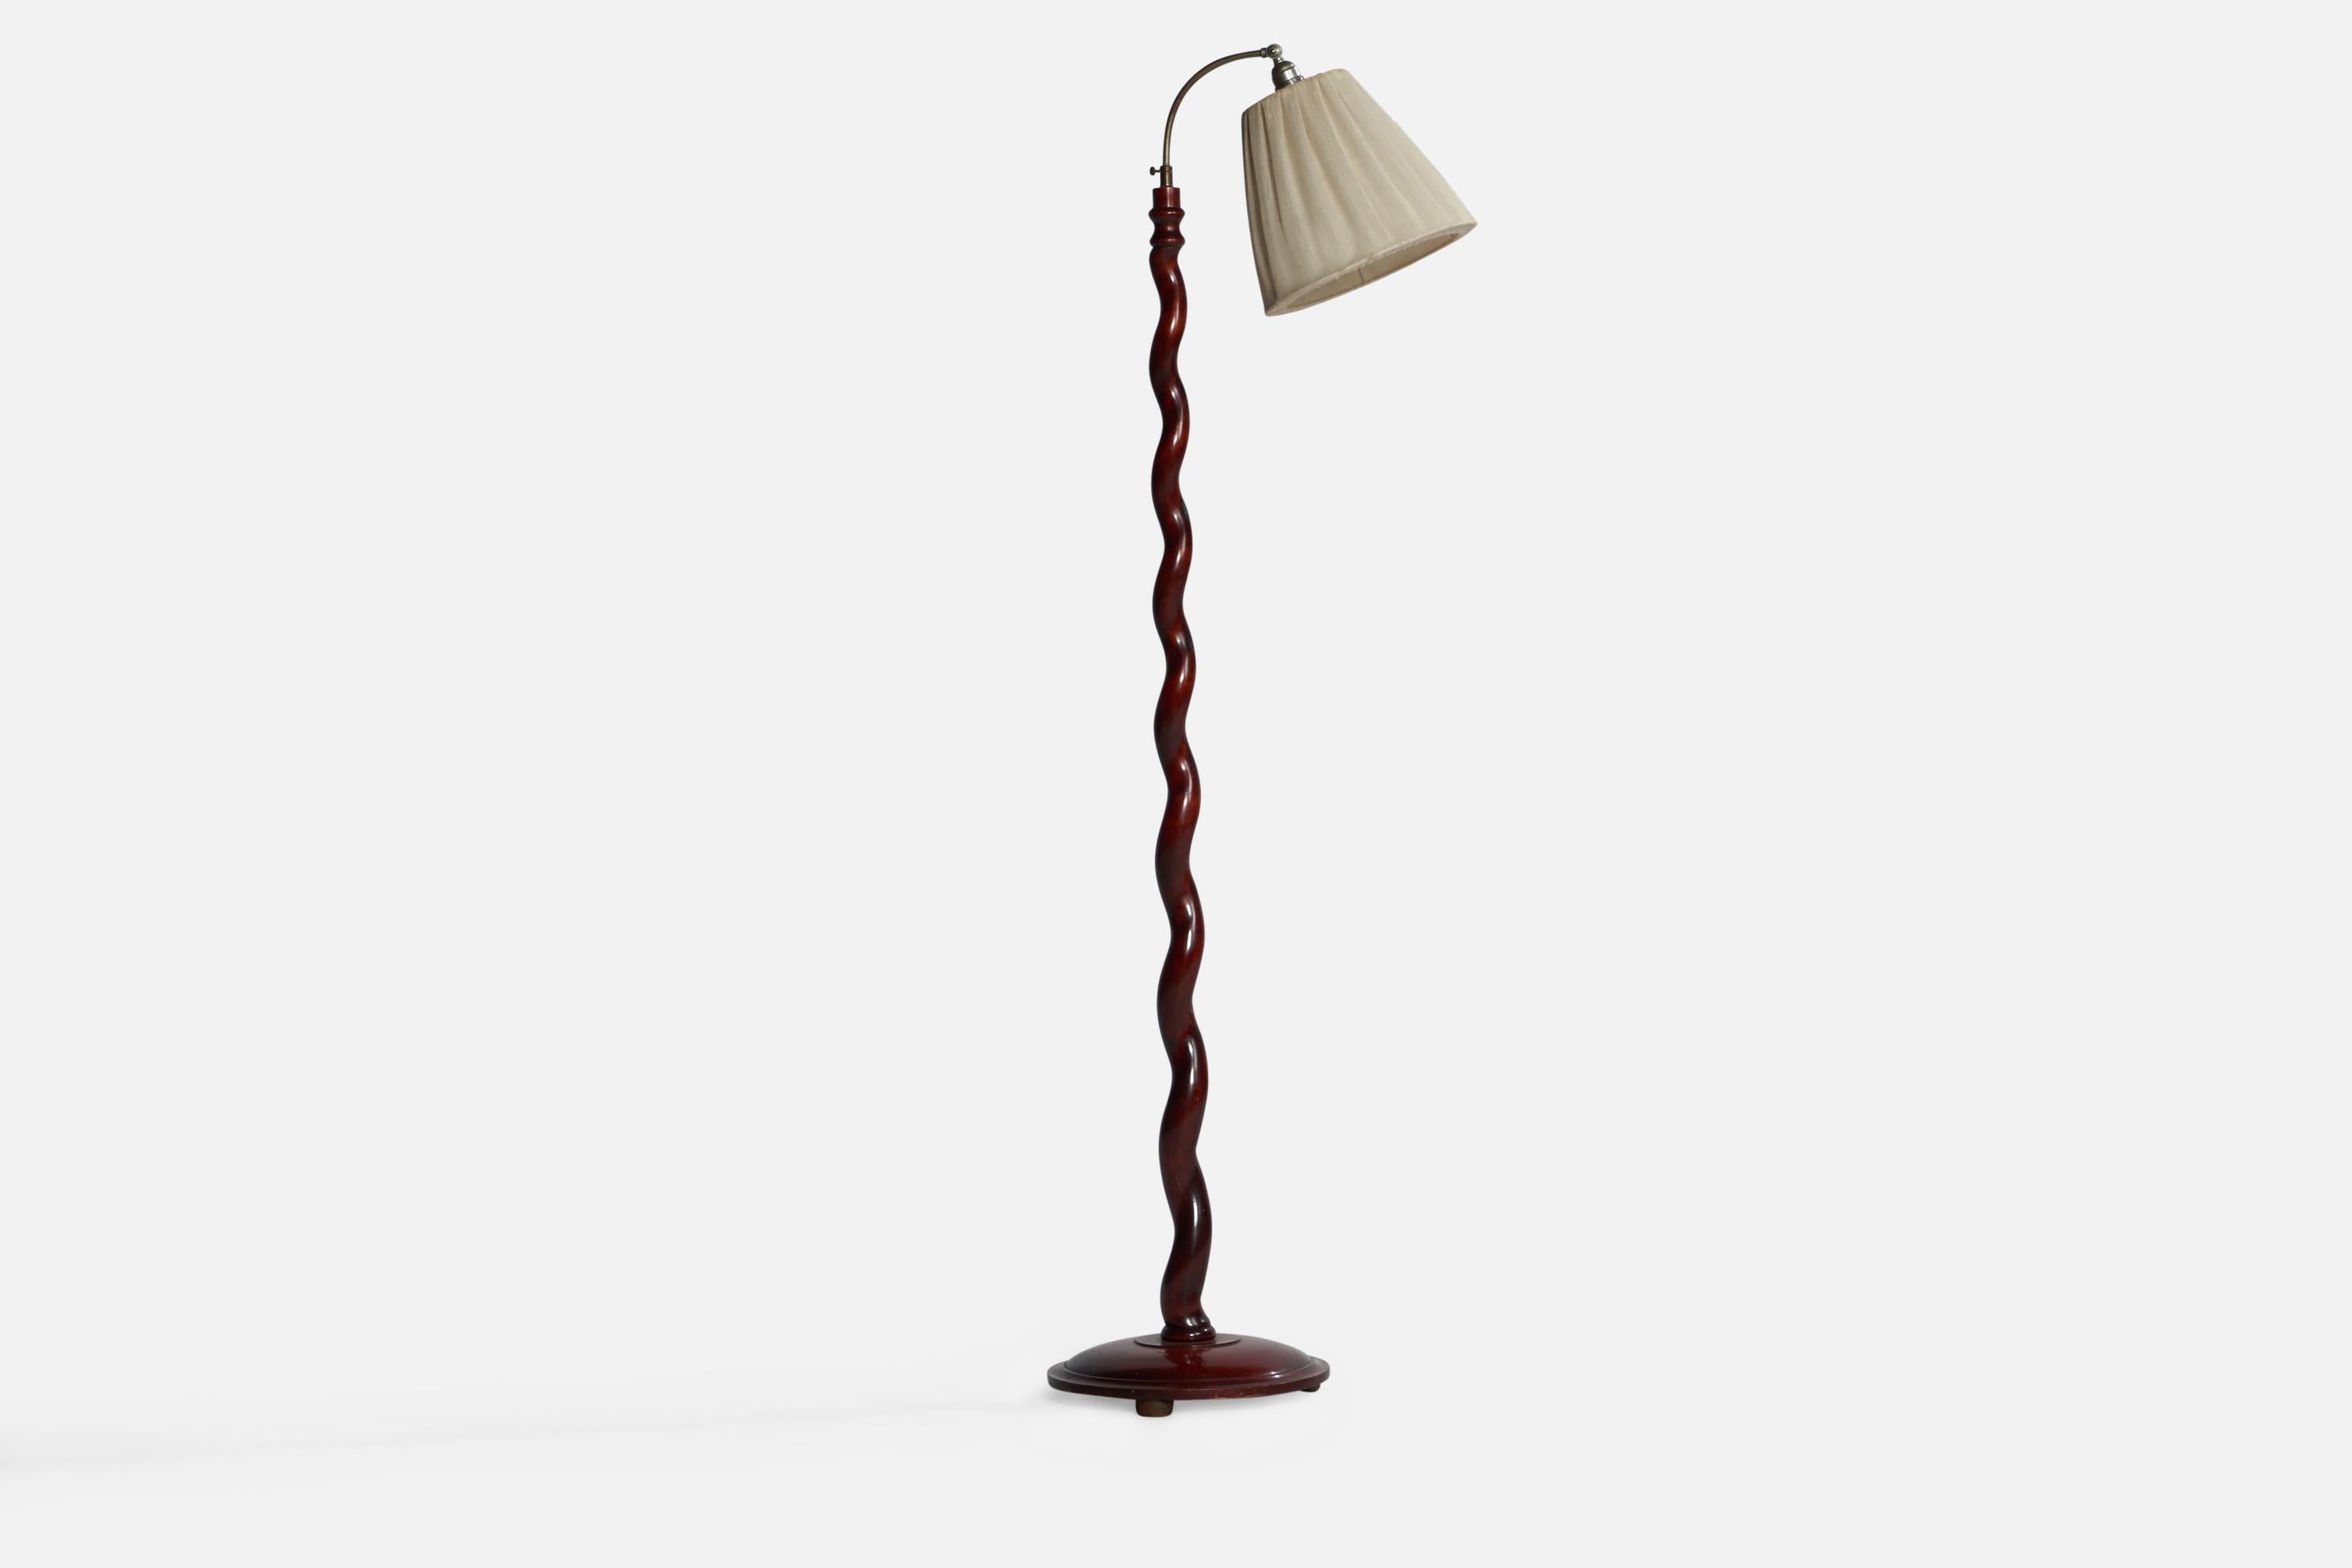 Eine Stehlampe aus Mahagoni, Stahl und cremefarbenem Stoff, entworfen und hergestellt in Schweden, 1930er Jahre.

Gesamtabmessungen (Zoll): 63,5